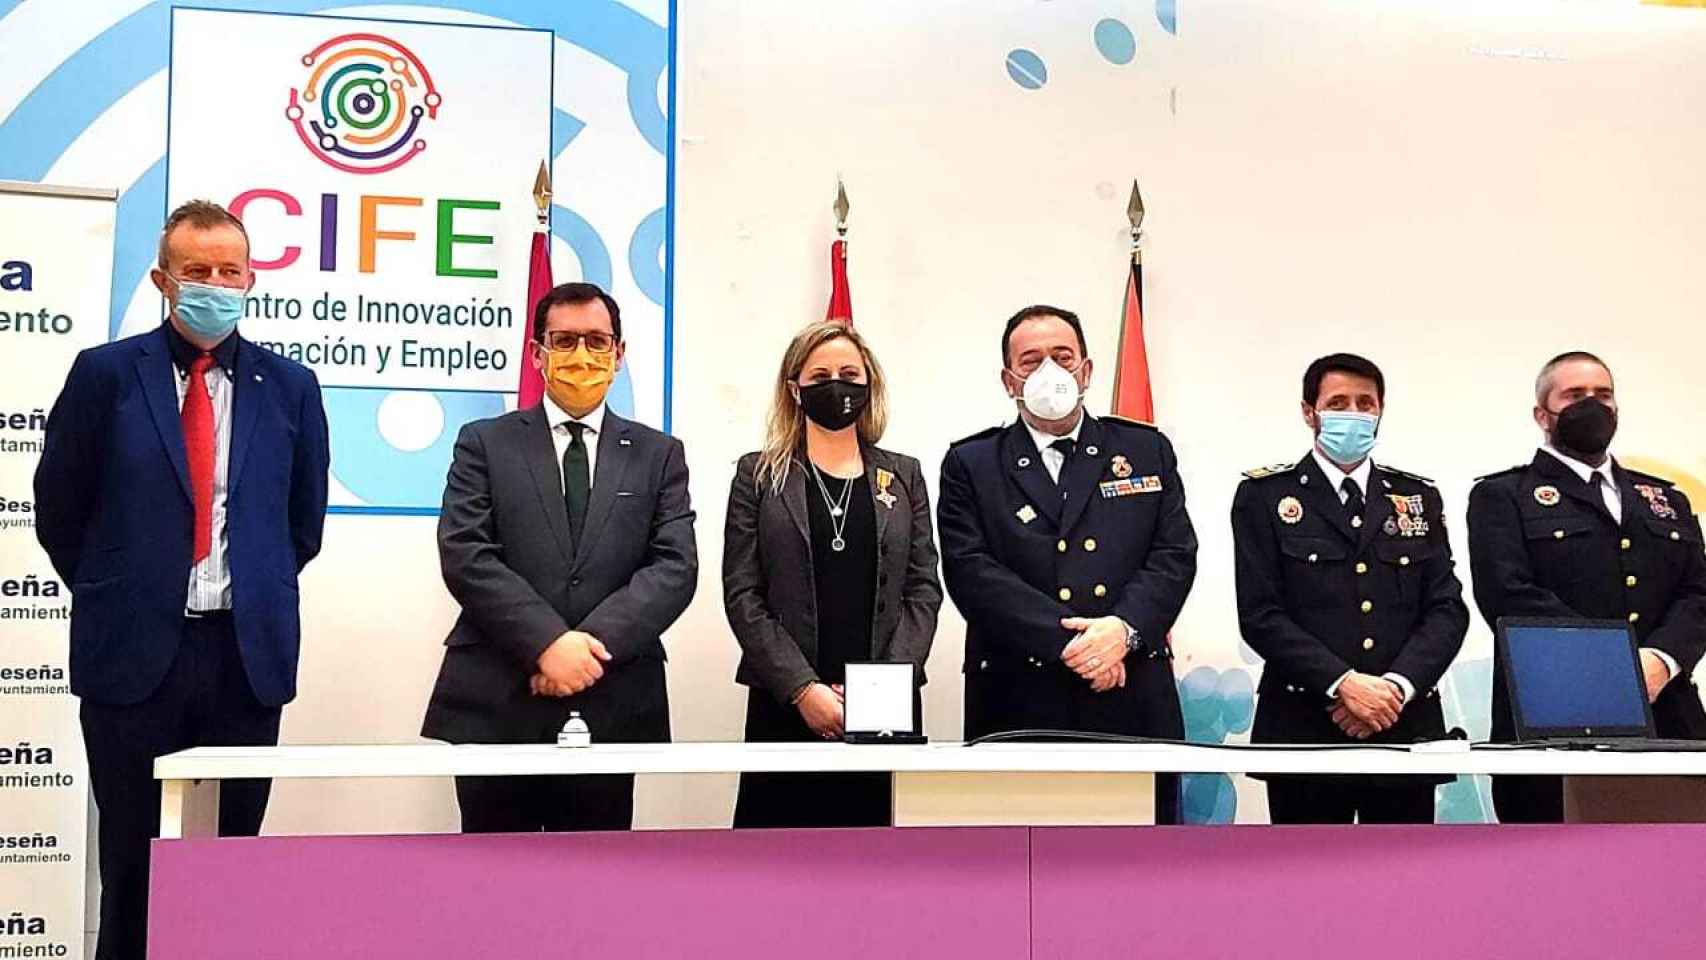 Silvia Fernández recibe la Medalla de Oro al Mérito en Protección Civil